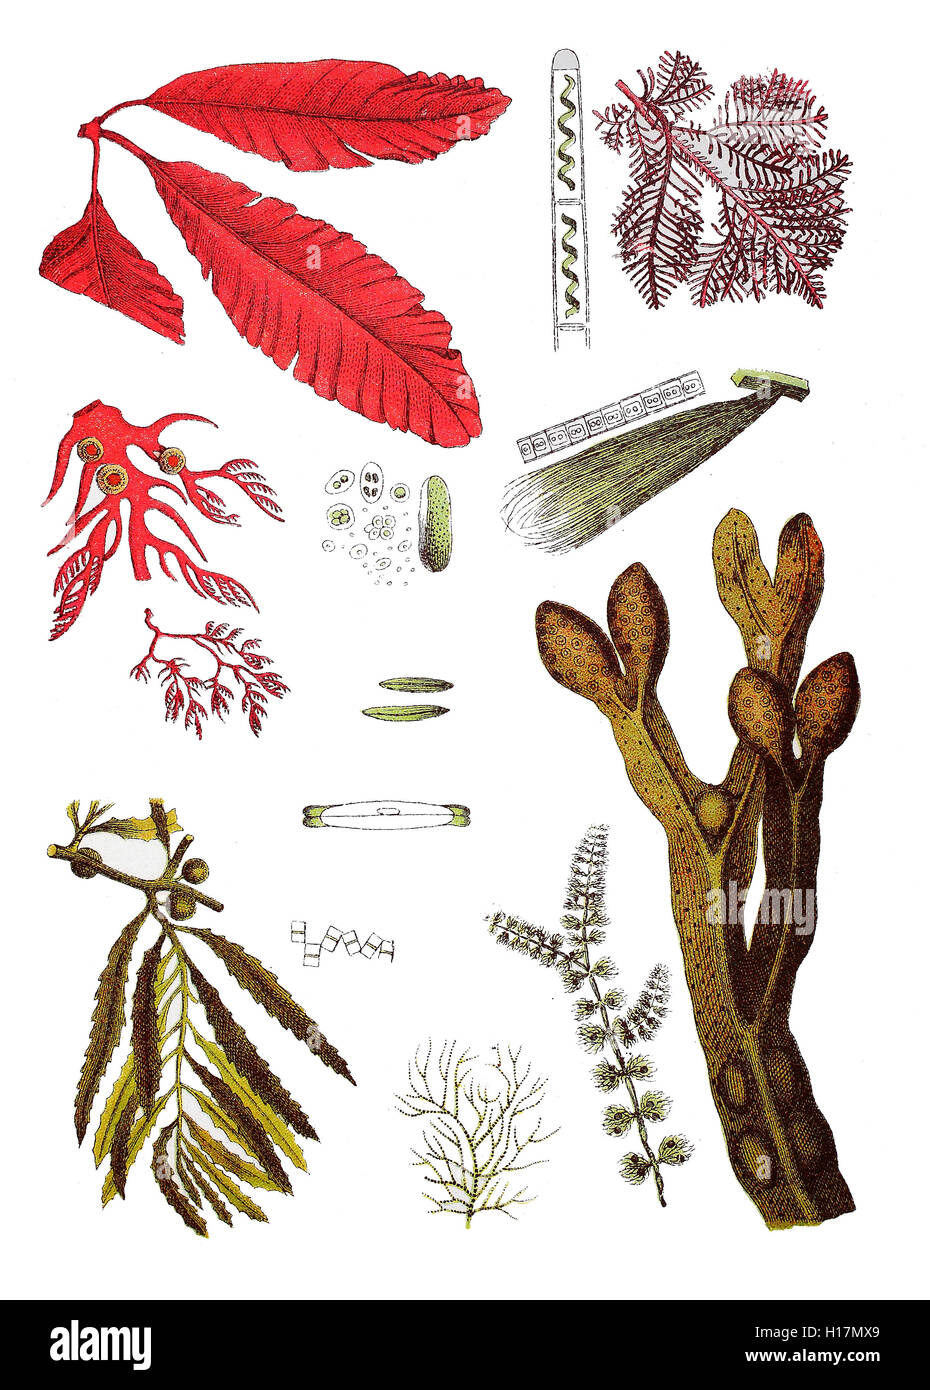 Gruene Schiffchenalge, Navicula viridis (3. von oben Mitte), Staebchenalge flocculosum, Diatoma (4. von oben Mitte), Stueckchenalge, Frustulia (2. von oben Mitte), Spiralbandalge, Spirogyra quiphile (oben Mitte), Einzellige Alge, Protococcus viridis (2.von oben Mitte), Flachsalge Conferva, linum (von oben rechts 2.), Blasentang, Braunalge, Fucus vesiculosus (rechts unten), Beerentang, Sargassum bacciferum), Gemeine, Froschlaichalge Batrachospermum moniliforme (2. und 3. von unten links), Roter Knorpeltang Gelidium corneum, 156 (Purpurner Kammtang oben),, Plocamium coccineum (2. und 3. von Banque D'Images